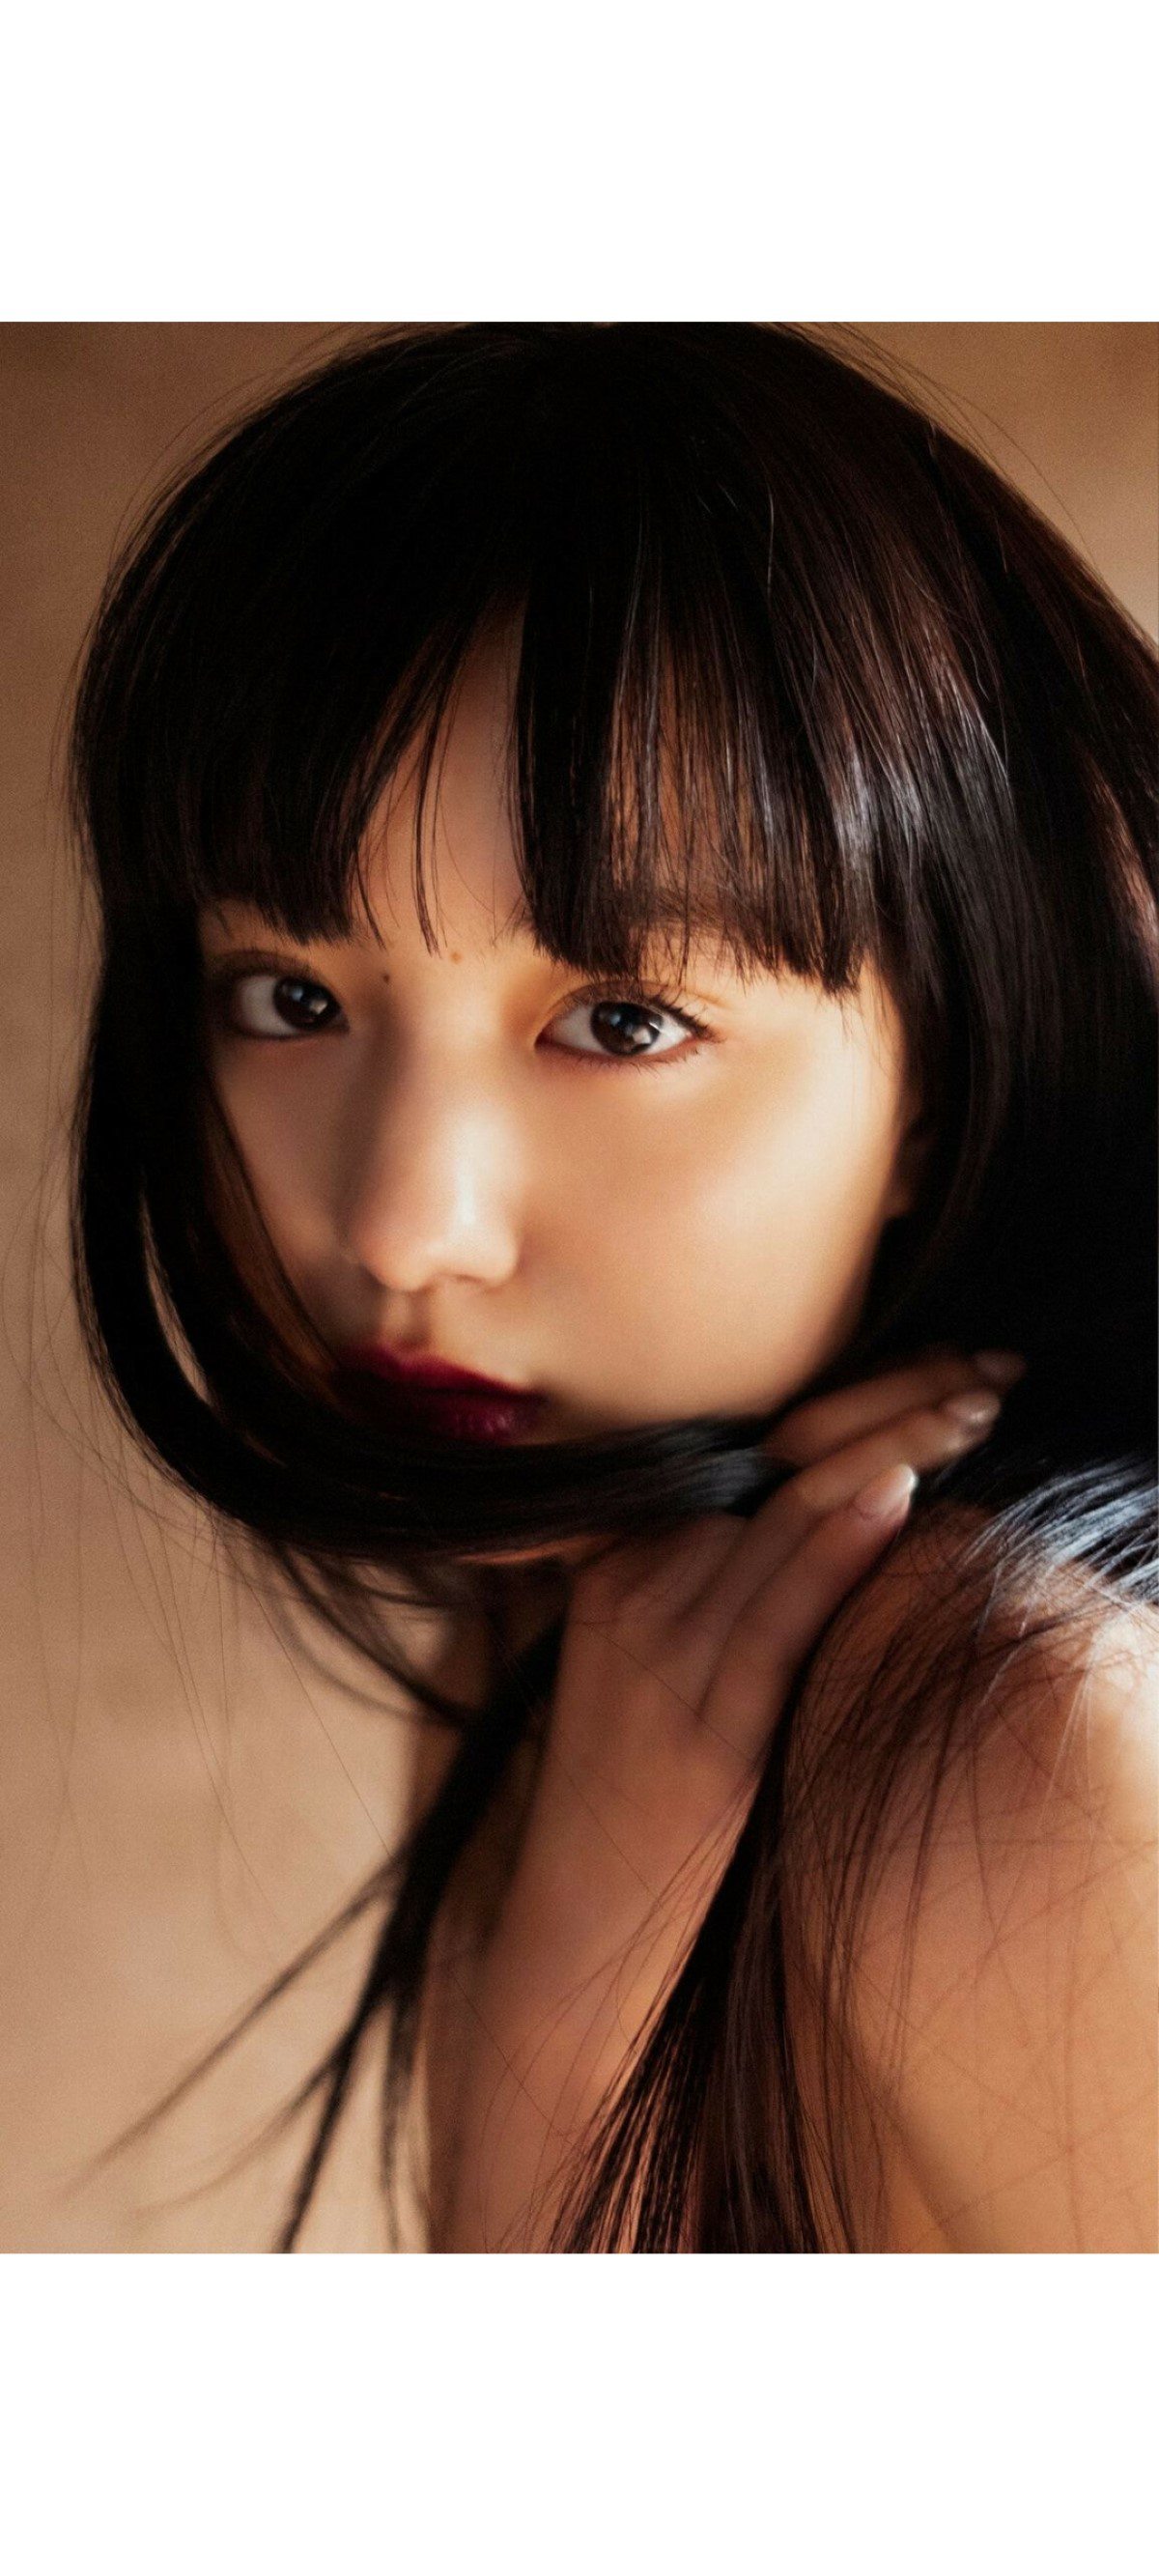 Weekly Photobook 2020 12 07 Noa Tsurushima 鶴嶋乃愛 A natural actress 生まれながらにして女優 0054 8147596921.jpg